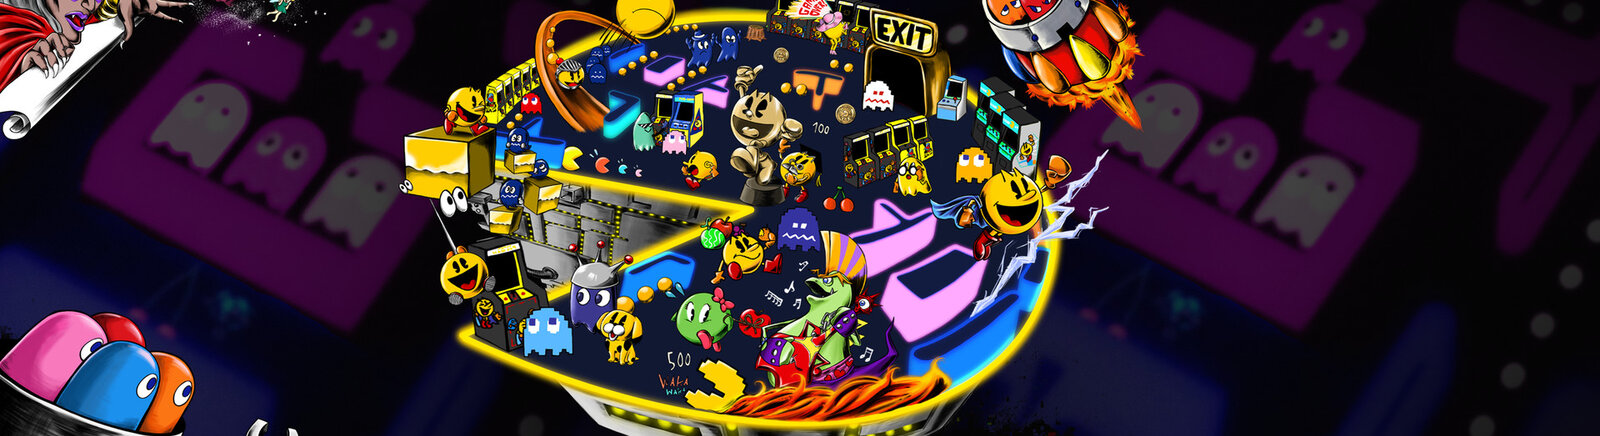 Дата выхода Pac-Man Museum  на PC, PS3 и Xbox 360 в России и во всем мире